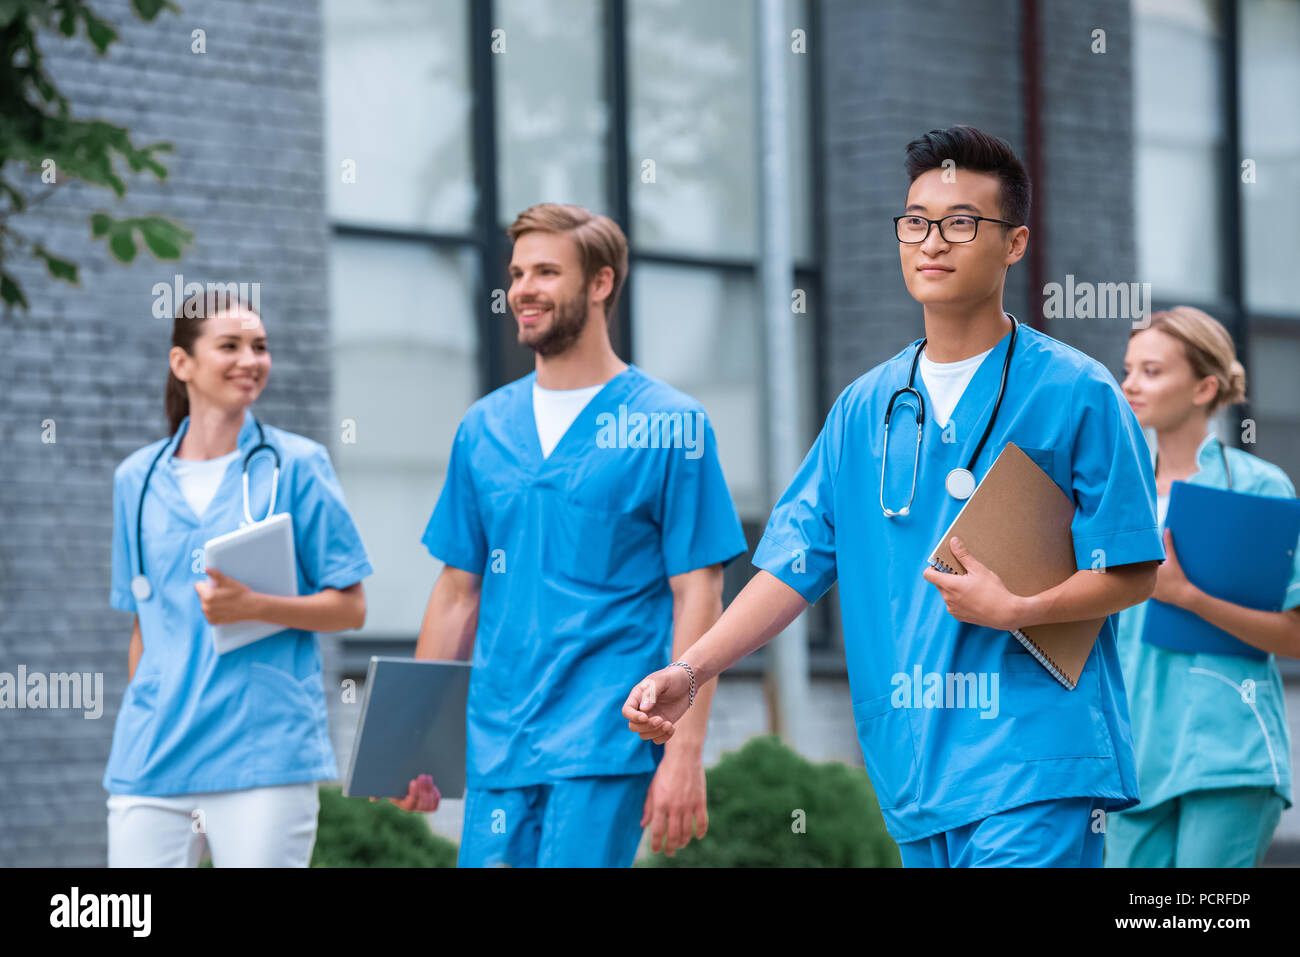 Les étudiants en médecine multiculturelle joyeuse autour de l'université de médecine Banque D'Images